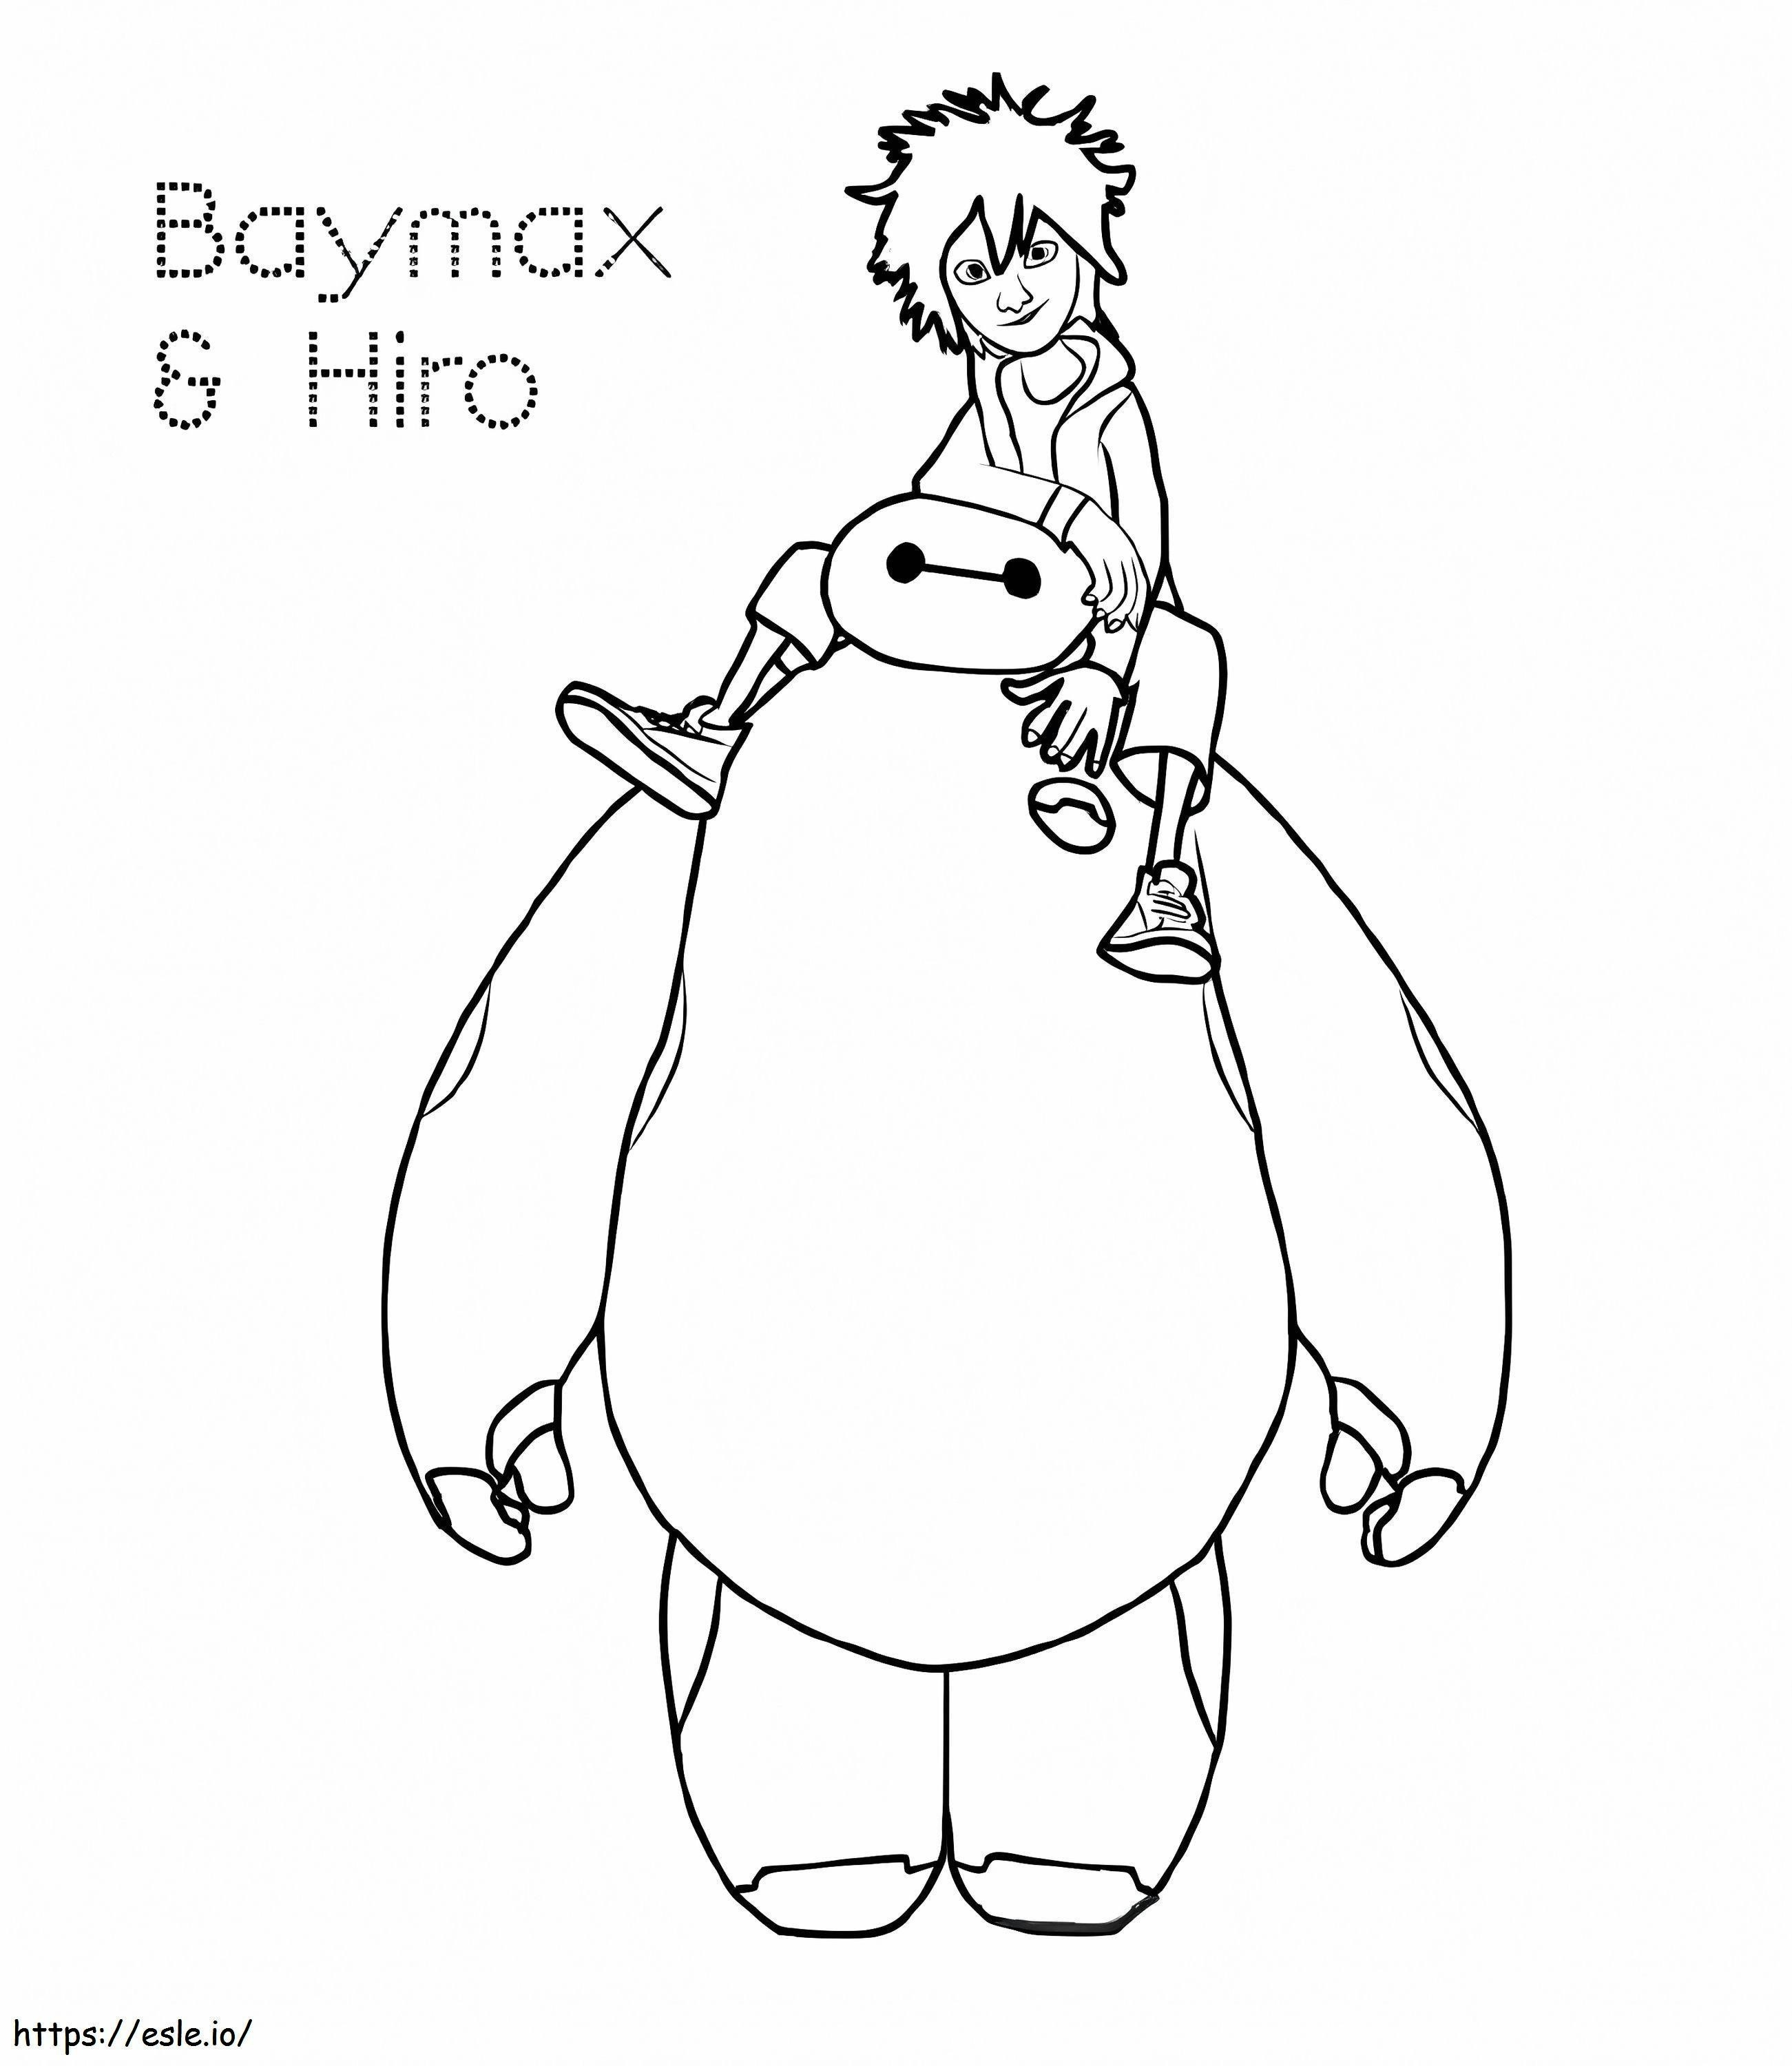 Hiro und Baymax ausmalbilder